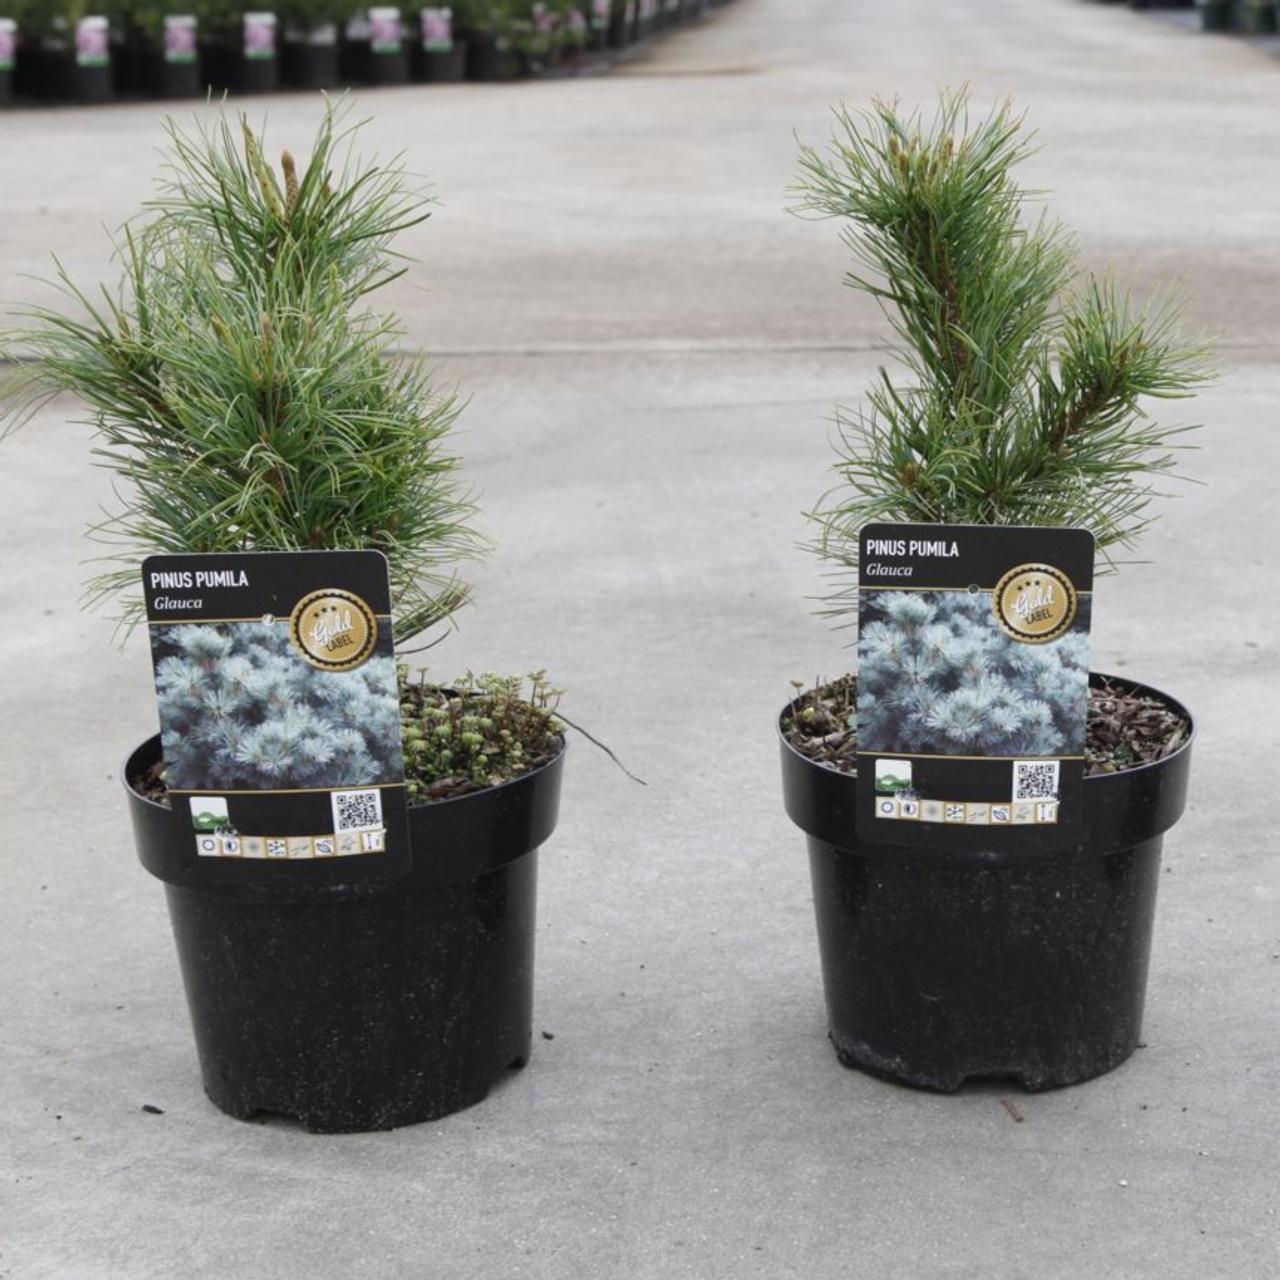 Pinus pumila 'Glauca' plant